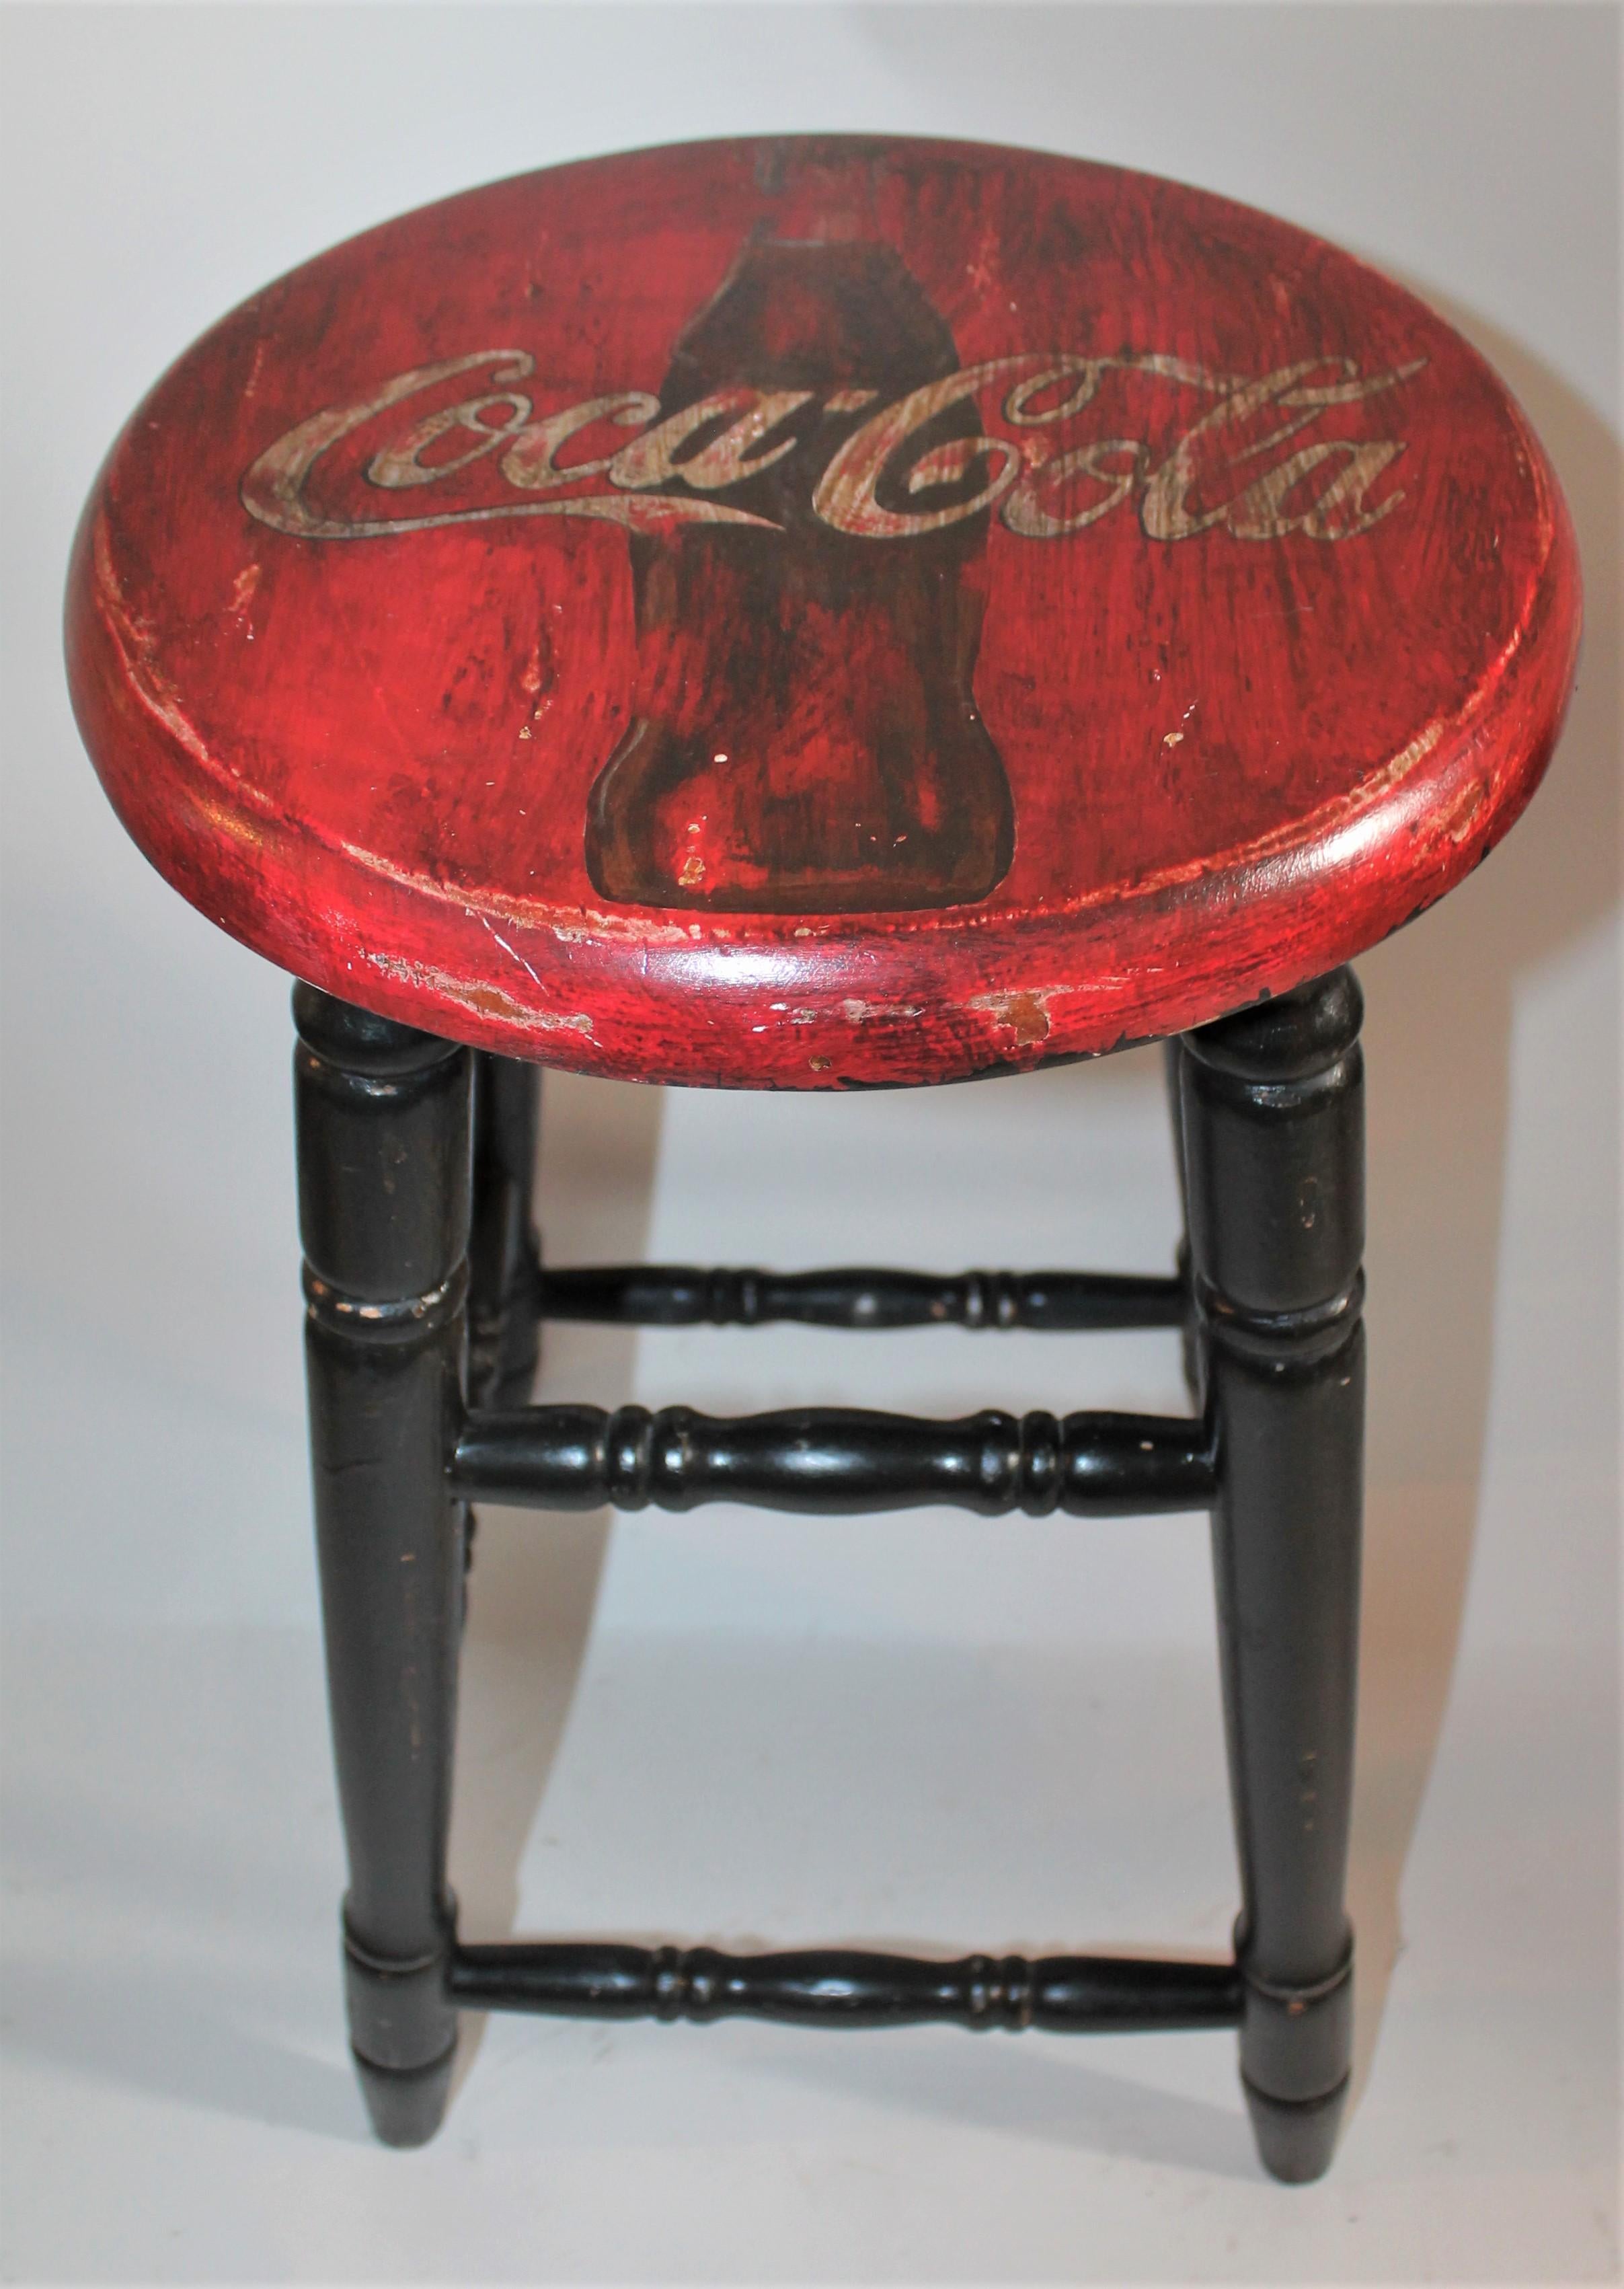 coca cola bar stools